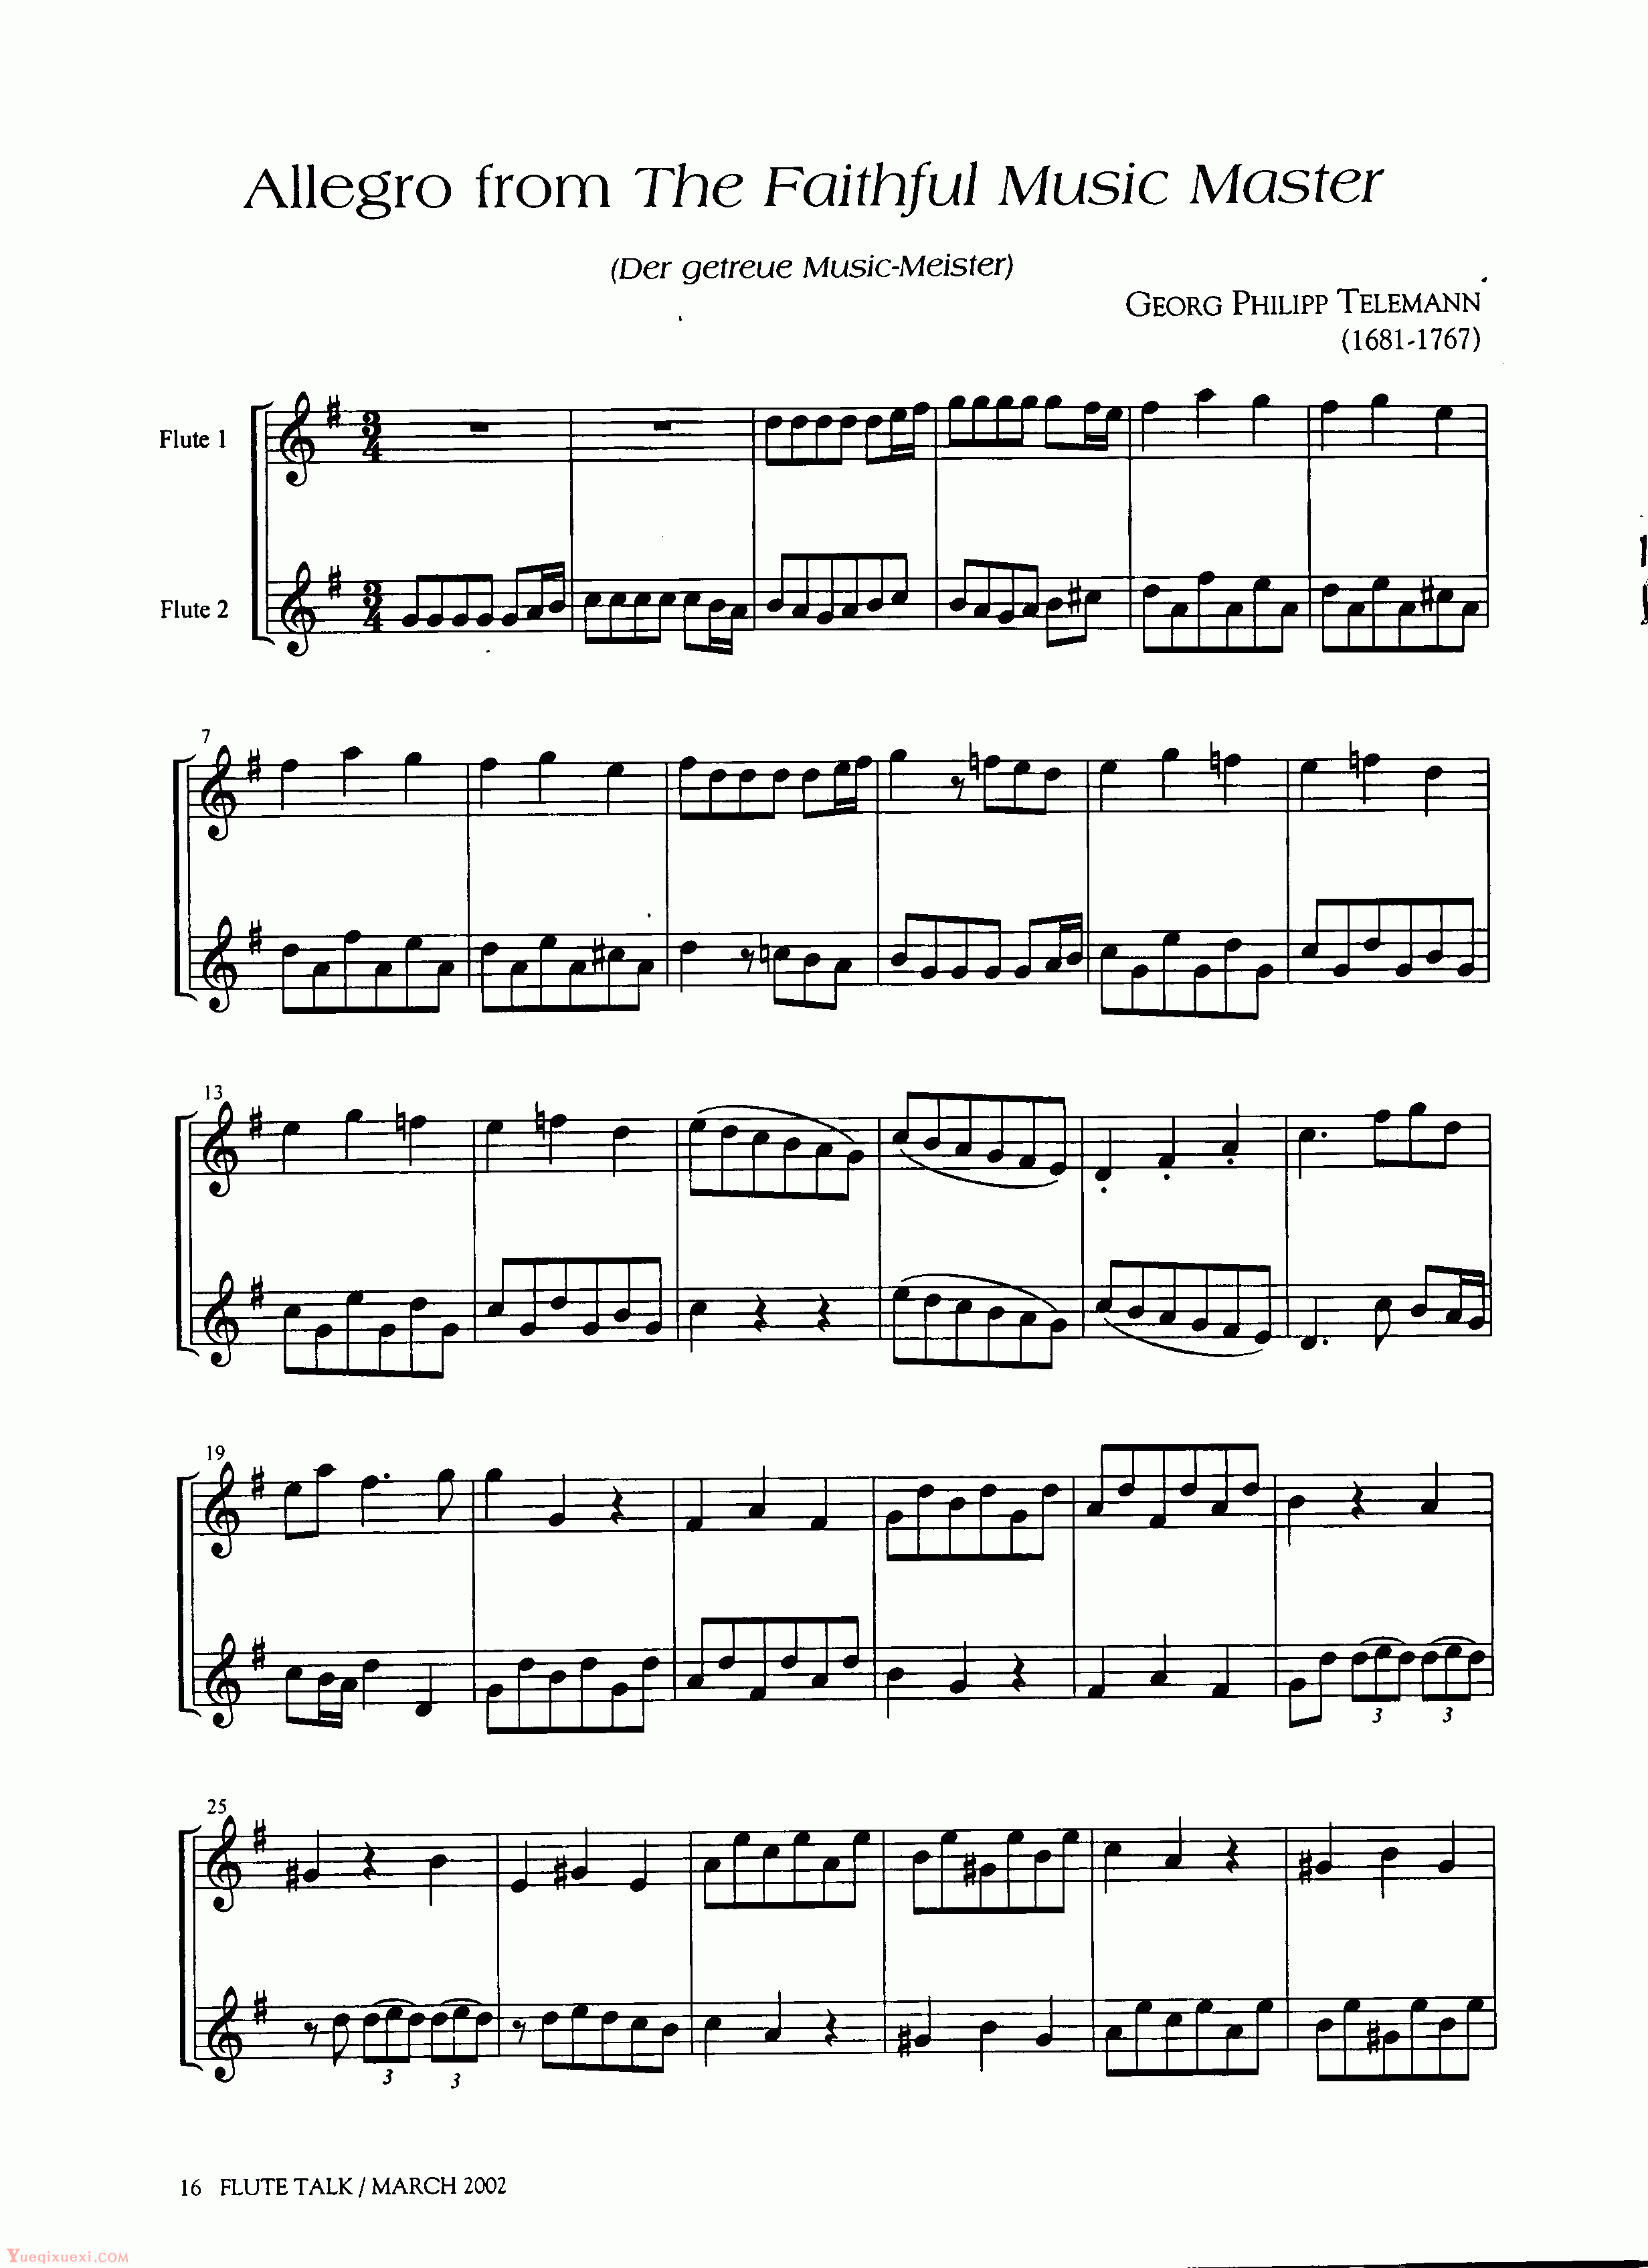 Allegro from The Faithful Music Master - Telemann